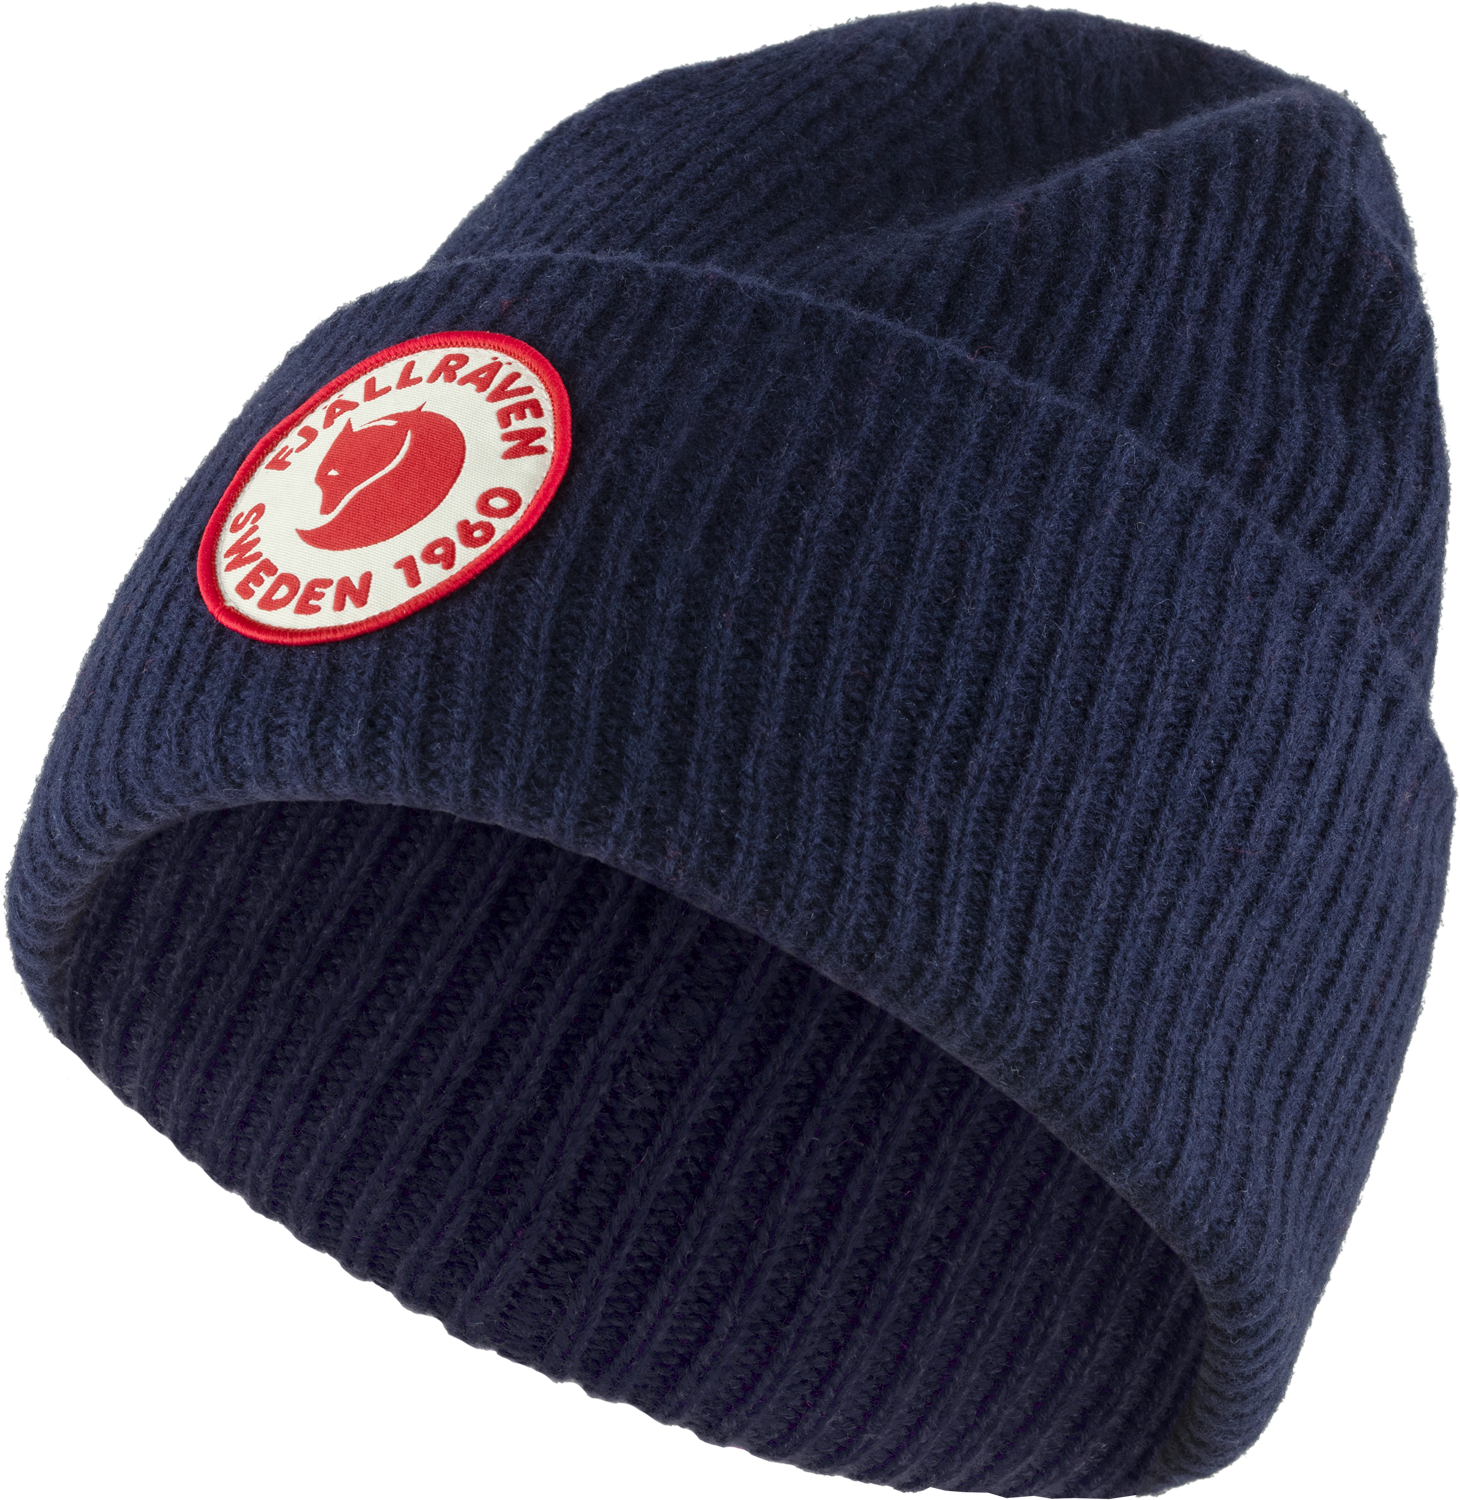 Woolen dark navy hat or cap